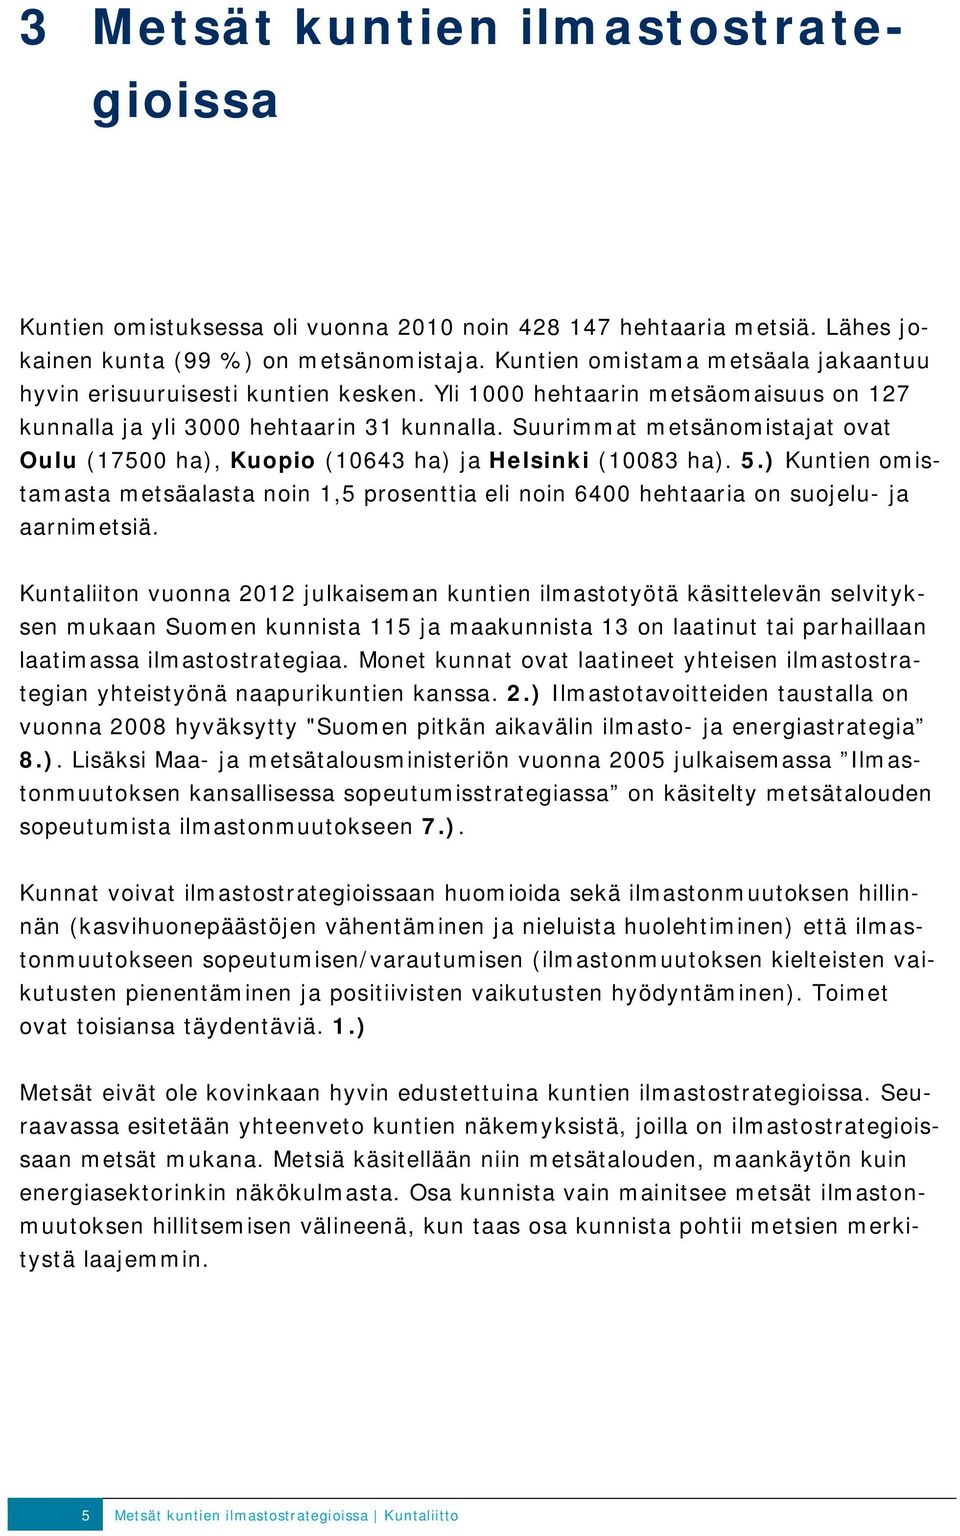 Suurimmat metsänomistajat ovat Oulu (17500 ha), Kuopio (10643 ha) ja Helsinki (10083 ha). 5.) Kuntien omistamasta metsäalasta noin 1,5 prosenttia eli noin 6400 hehtaaria on suojelu- ja aarnimetsiä.